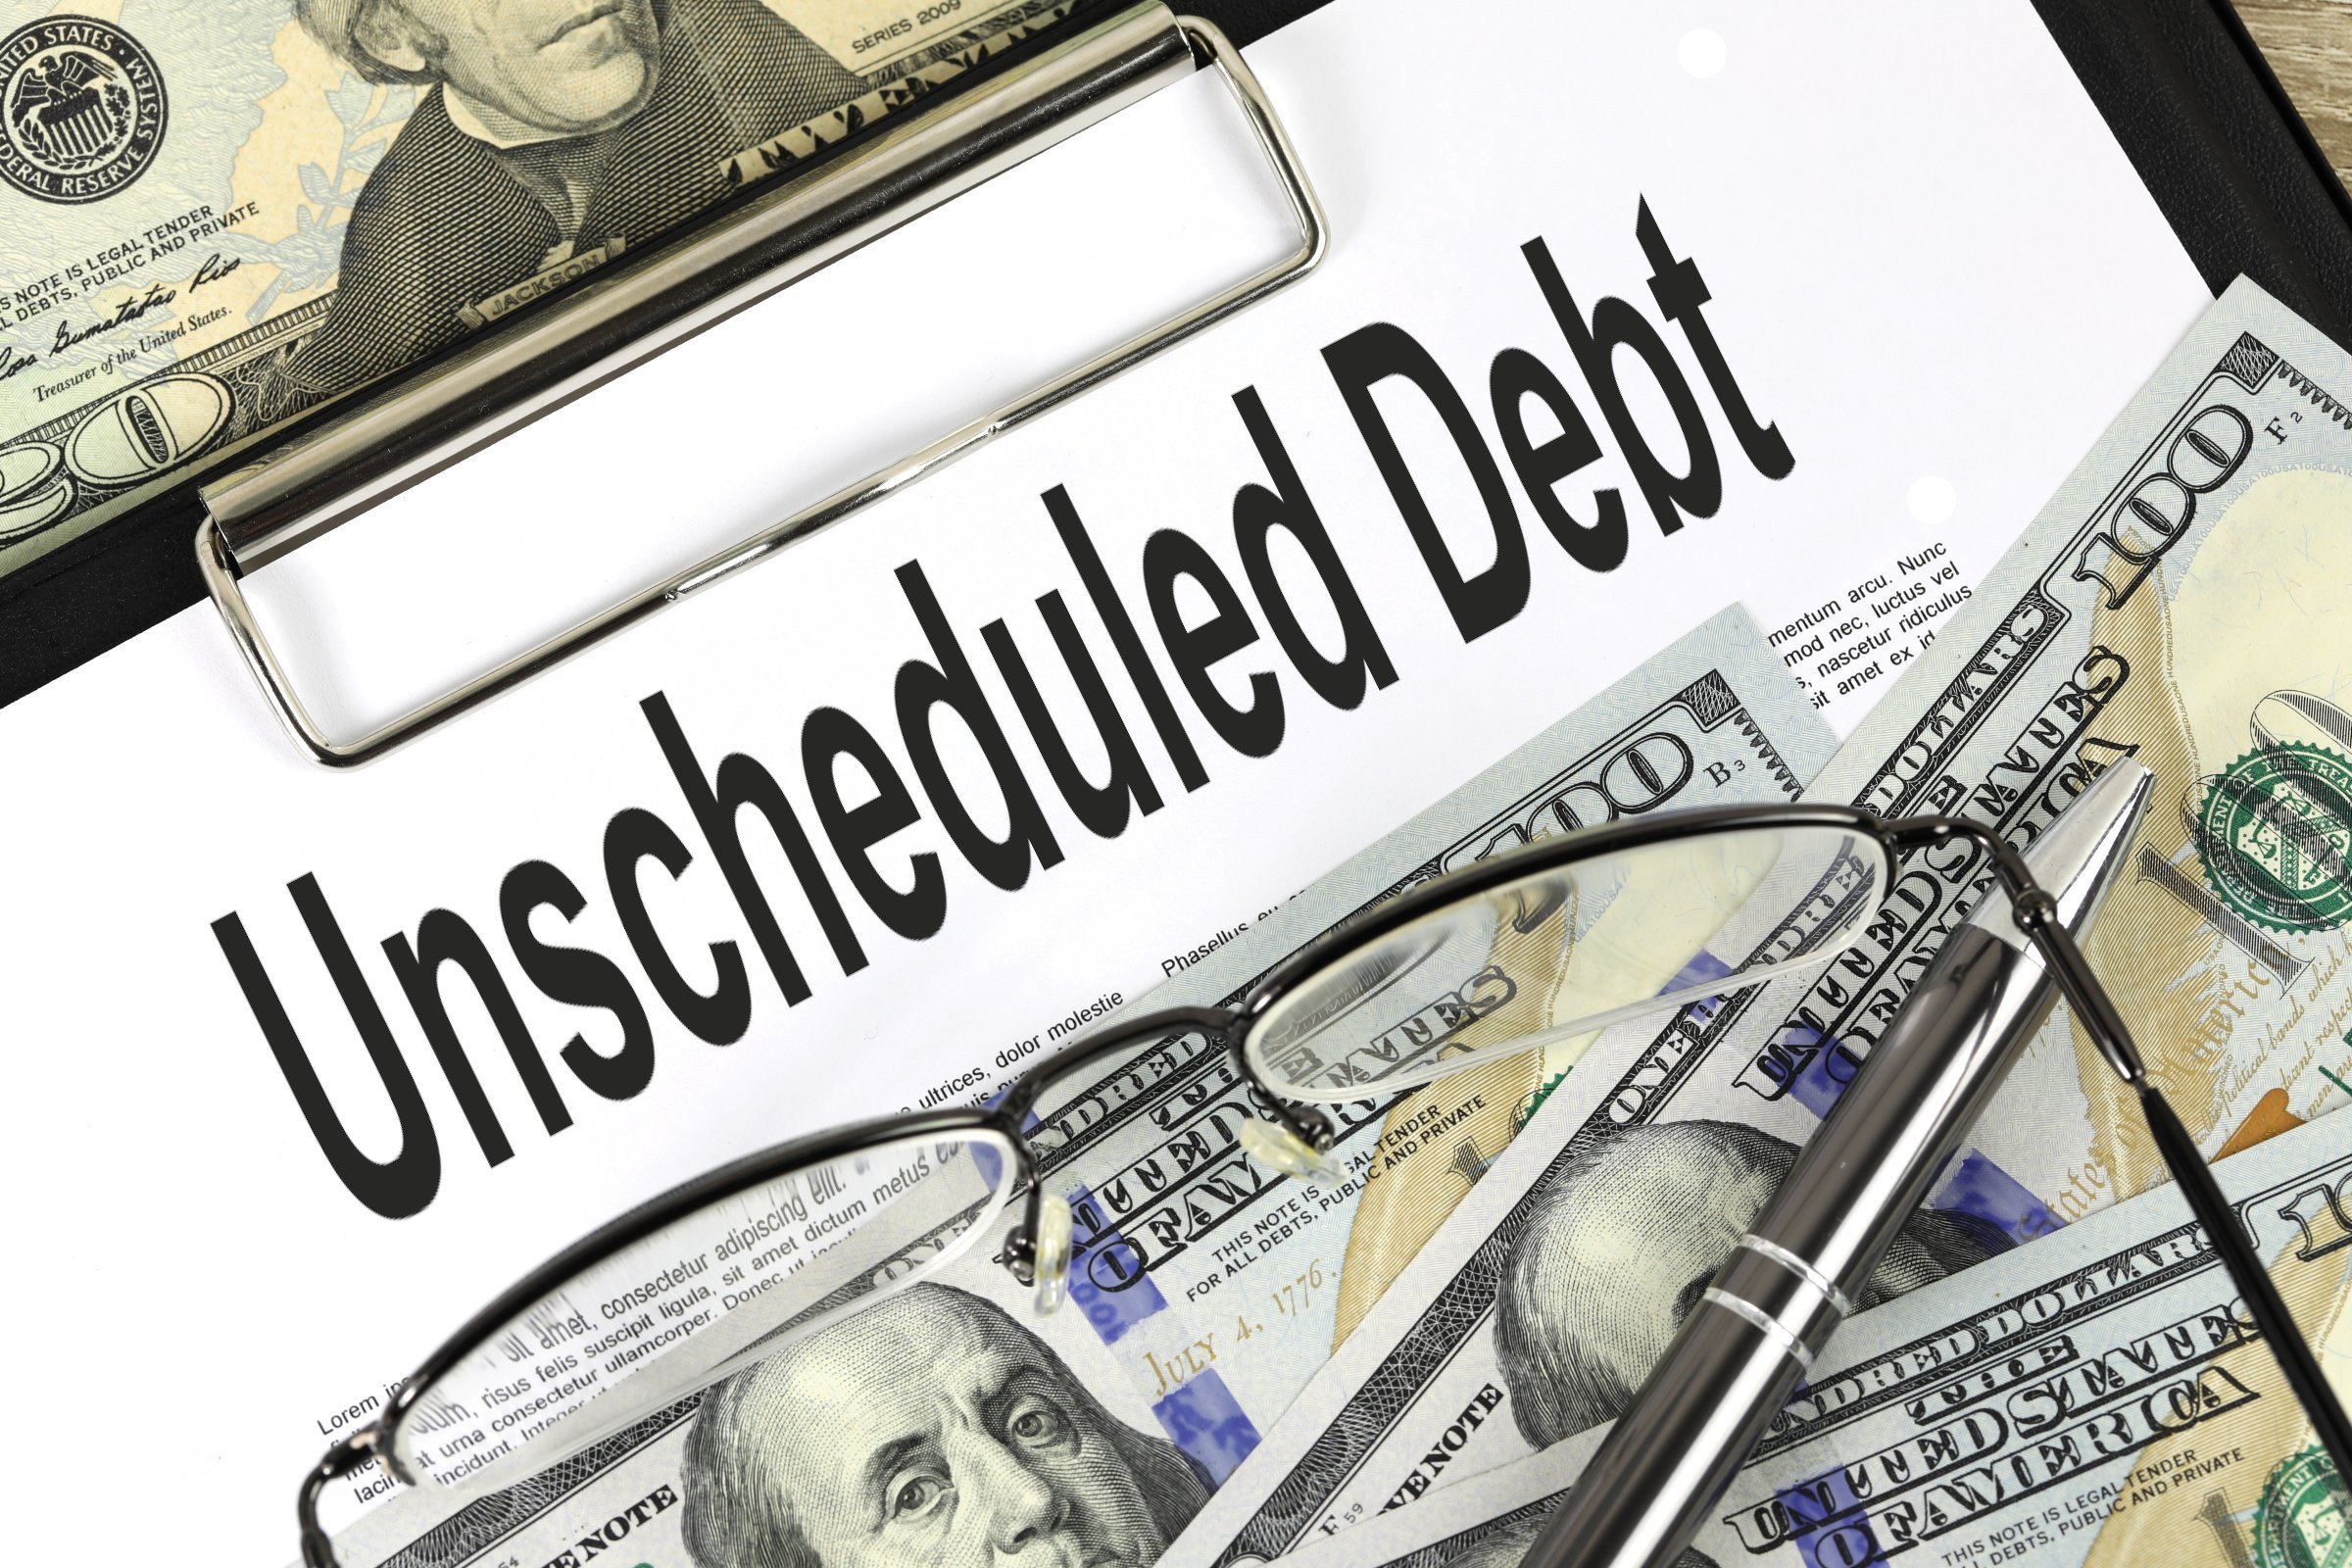 unscheduled debt